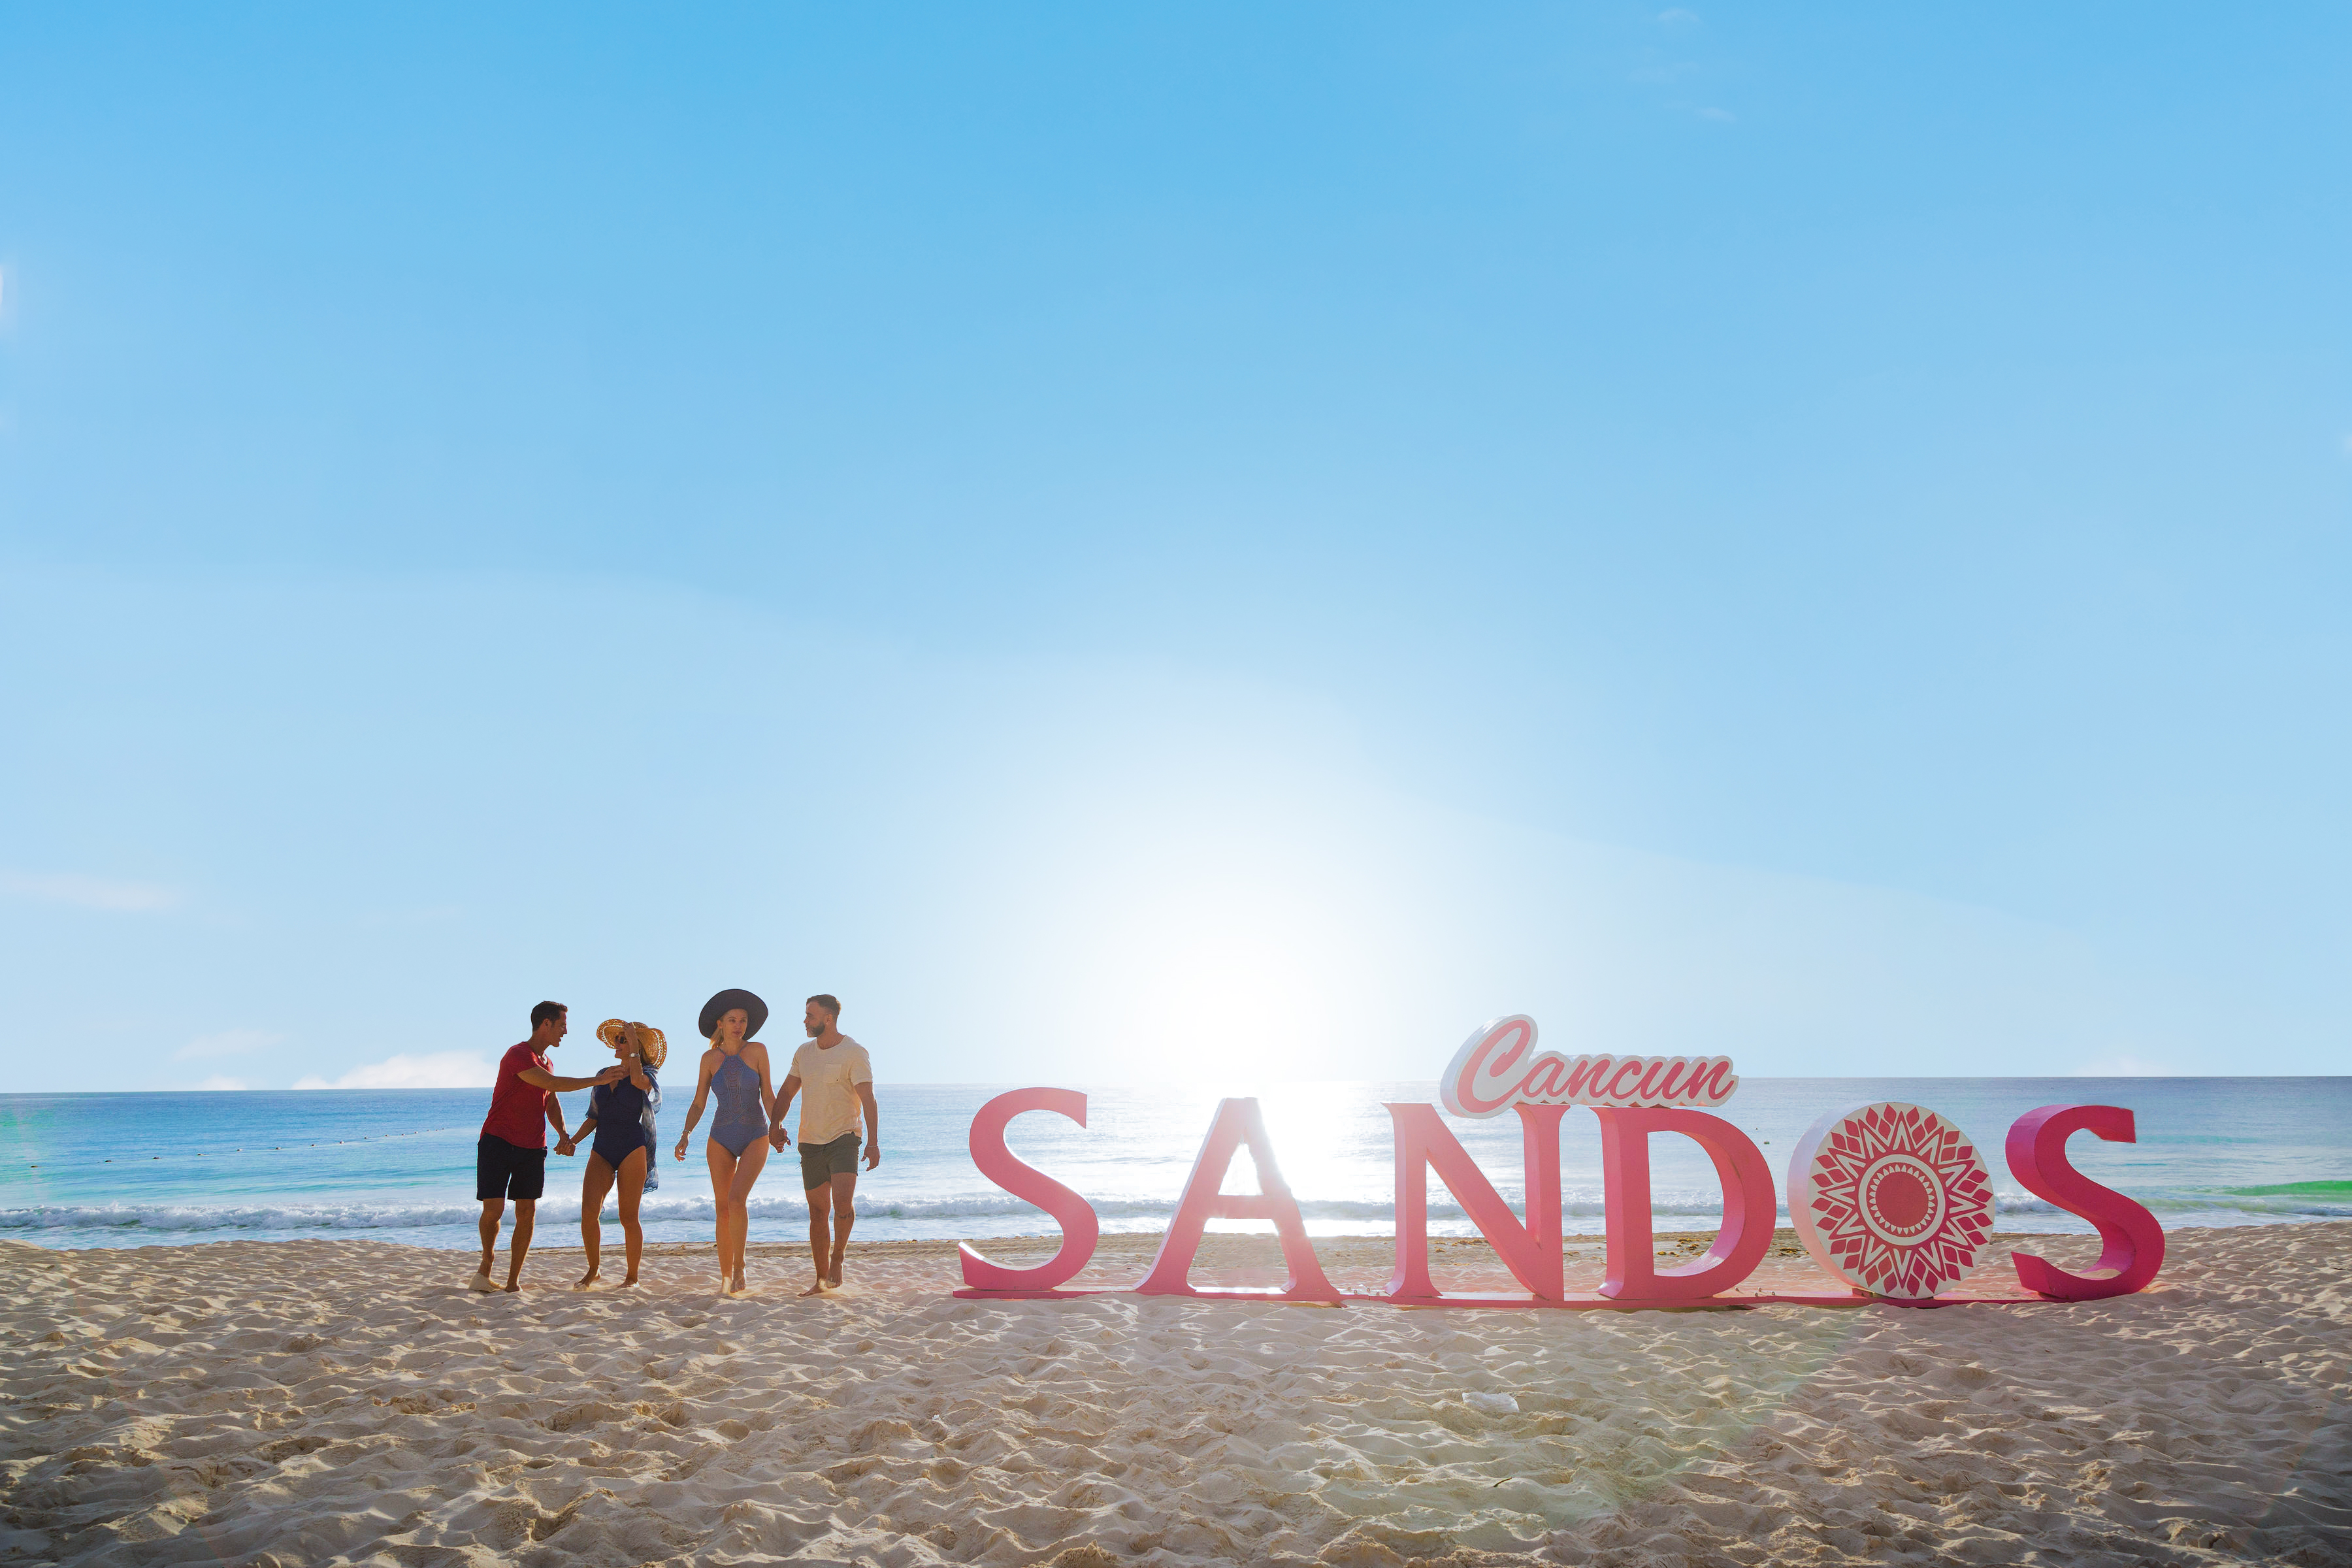 Sandos Cancun All Inclusive